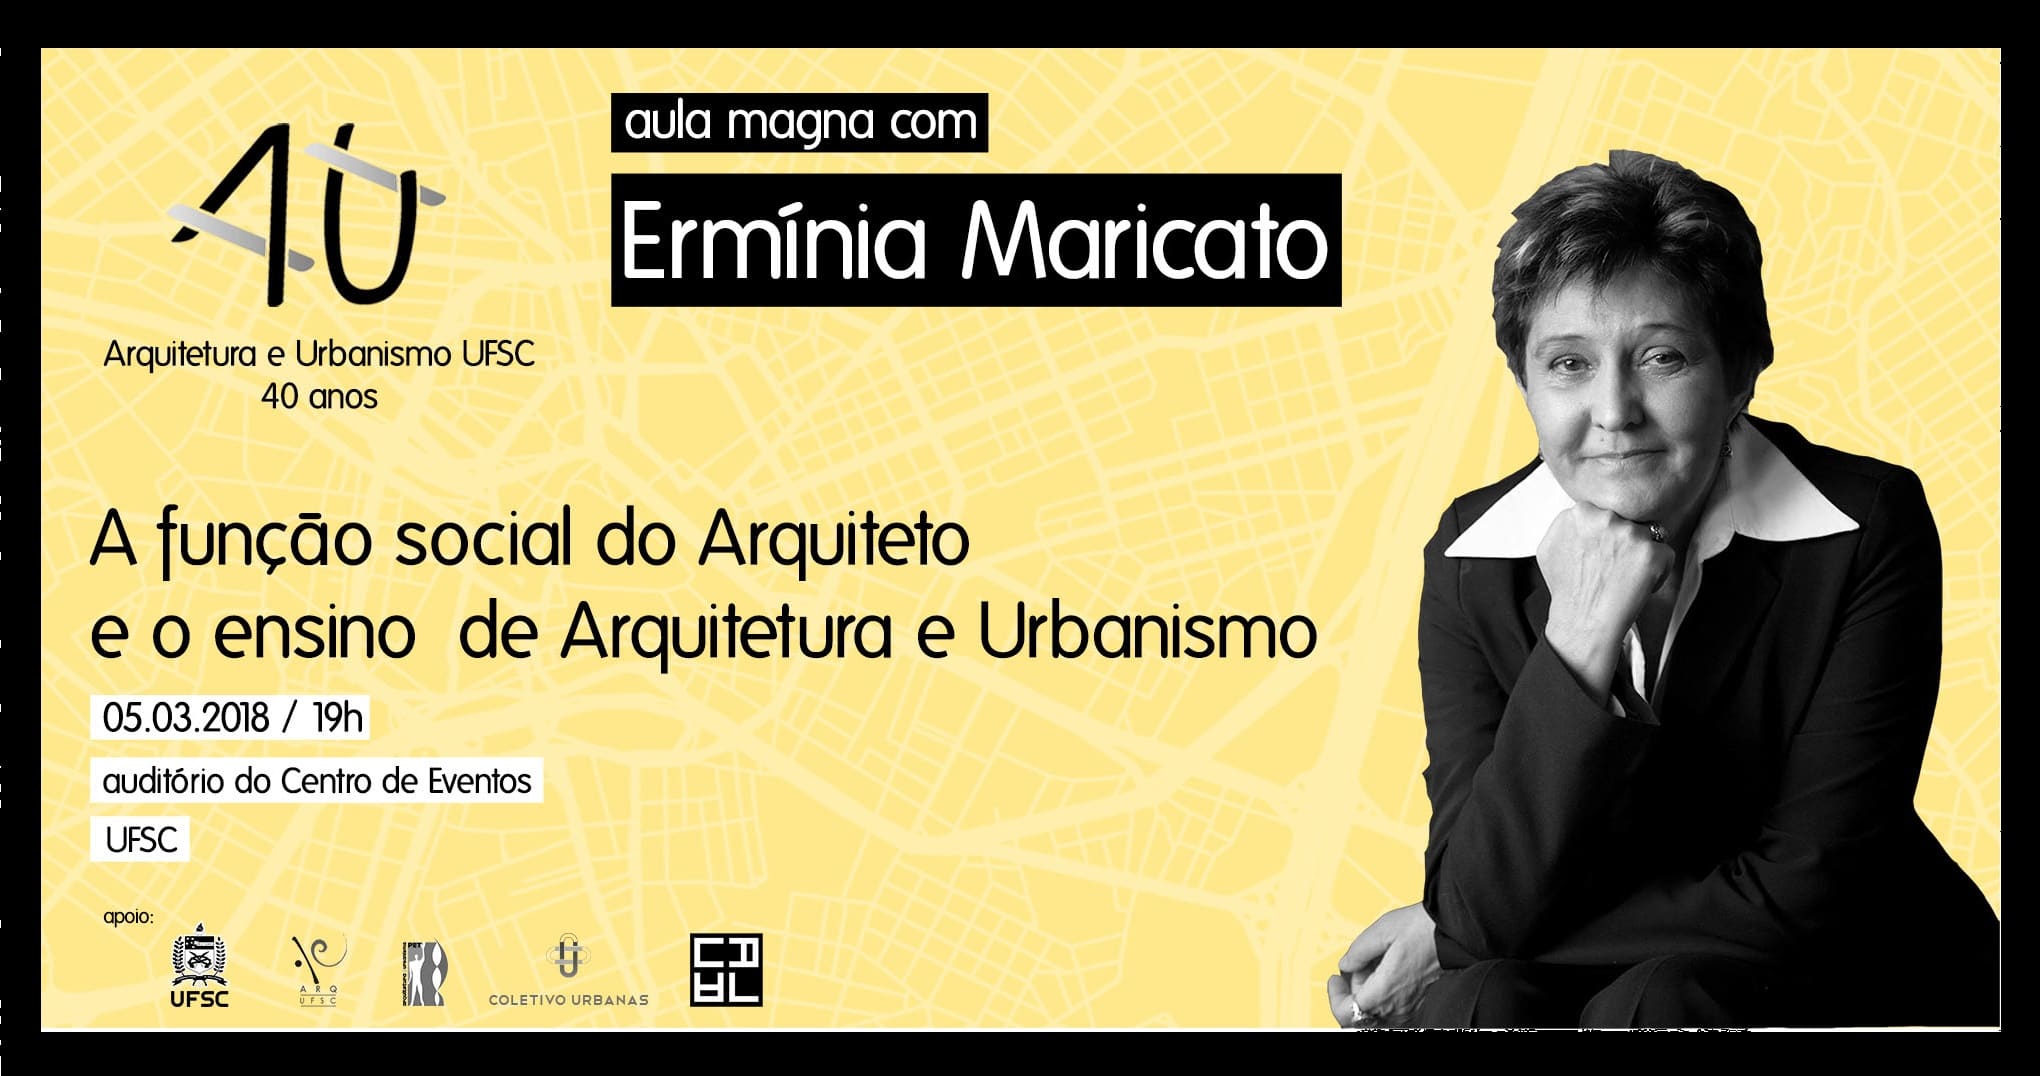 Ermínia Maricato participa de eventos em Florianópolis nesta segunda e terça-feira